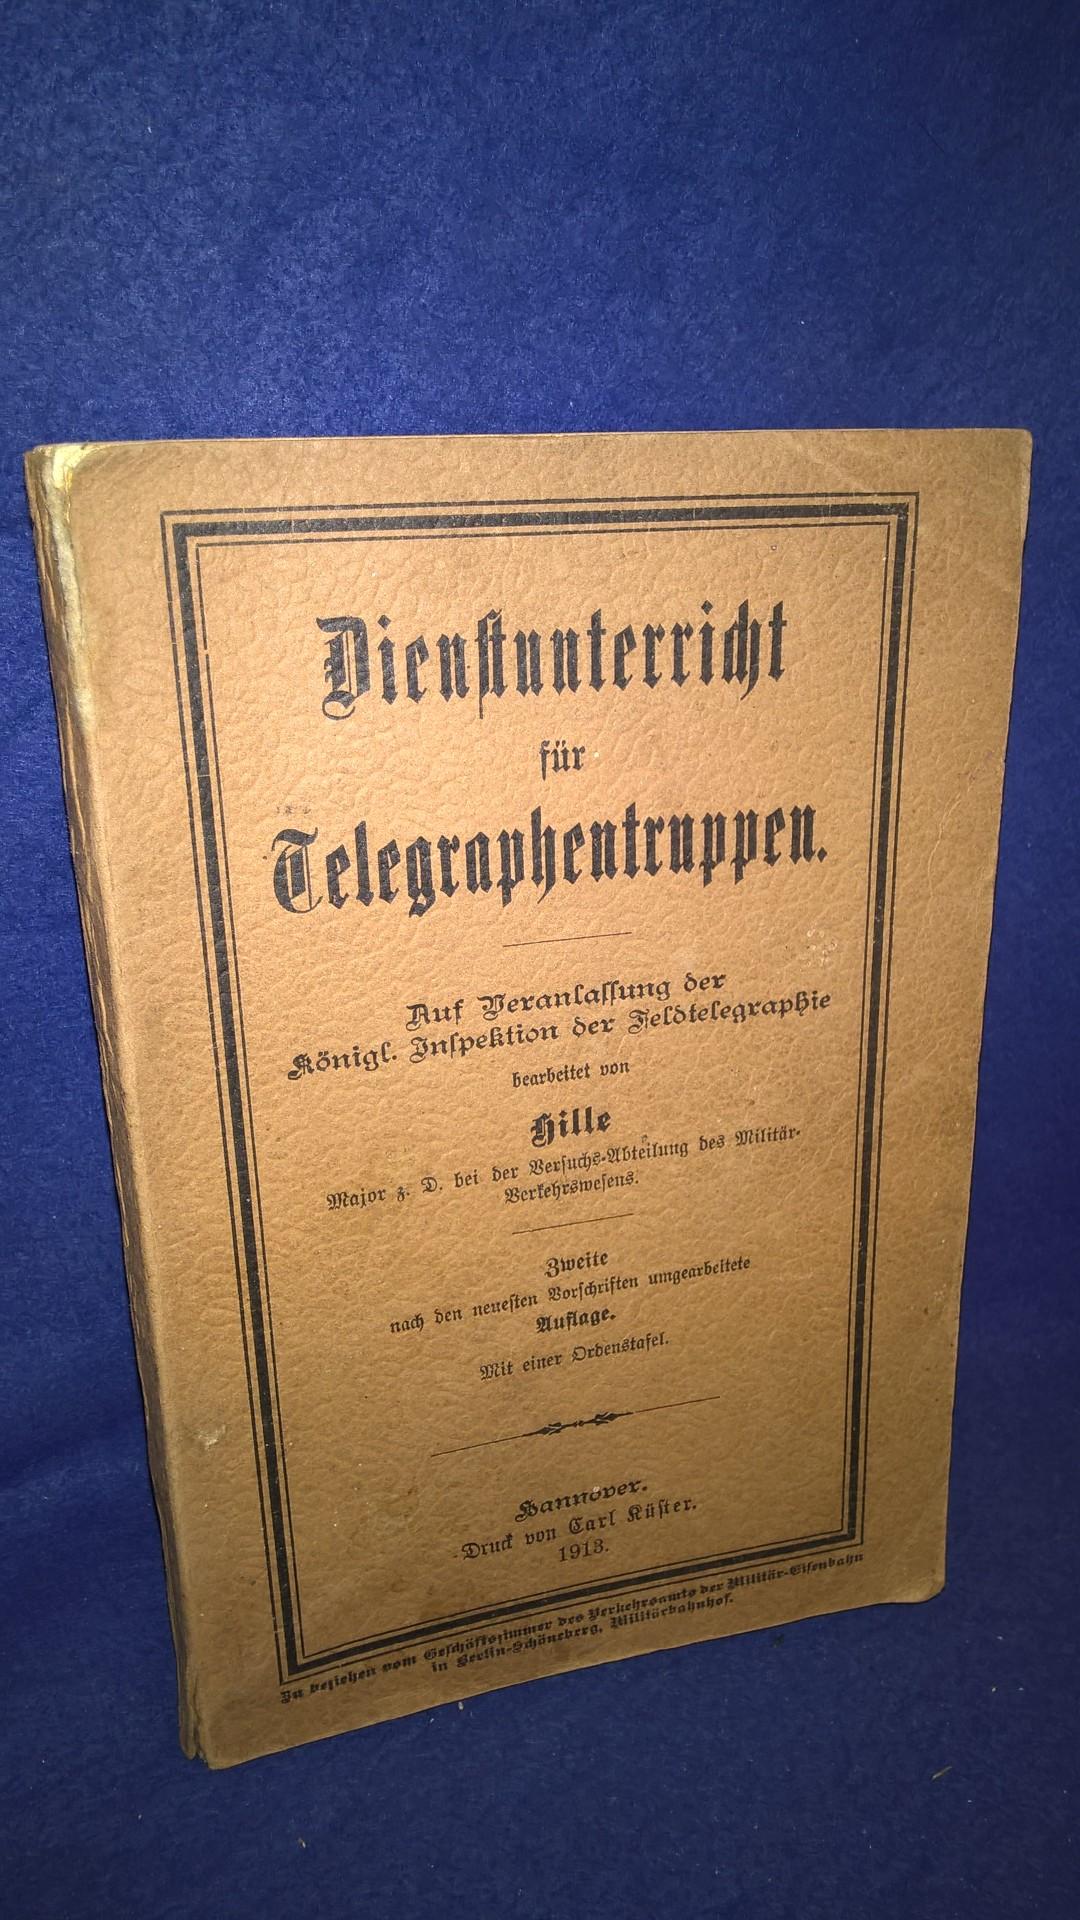 Dienstunterricht für Telegraphentruppen, 1913. Auf Veranlassung der Königl. Inspektion der Feldtelegraphie bearbeitet.